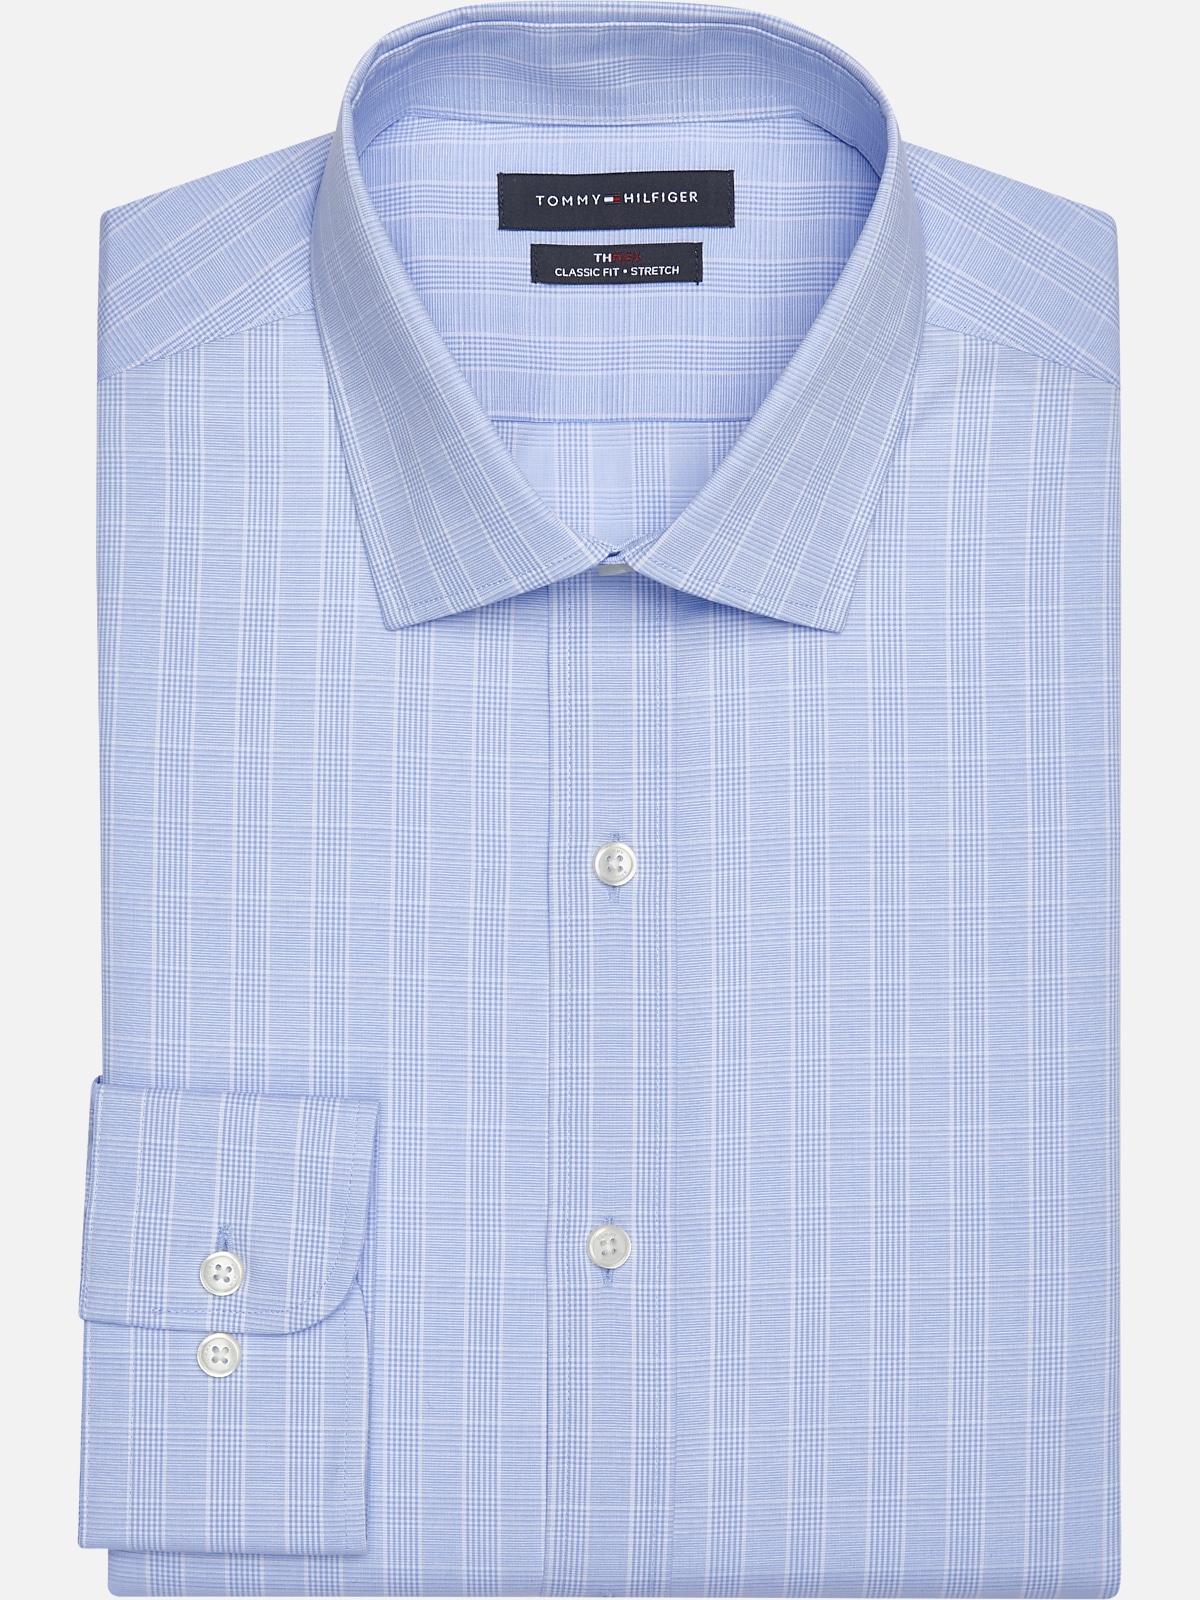 Tommy Hilfiger Flex Classic Fit Spread Collar Dress Shirt | All ...